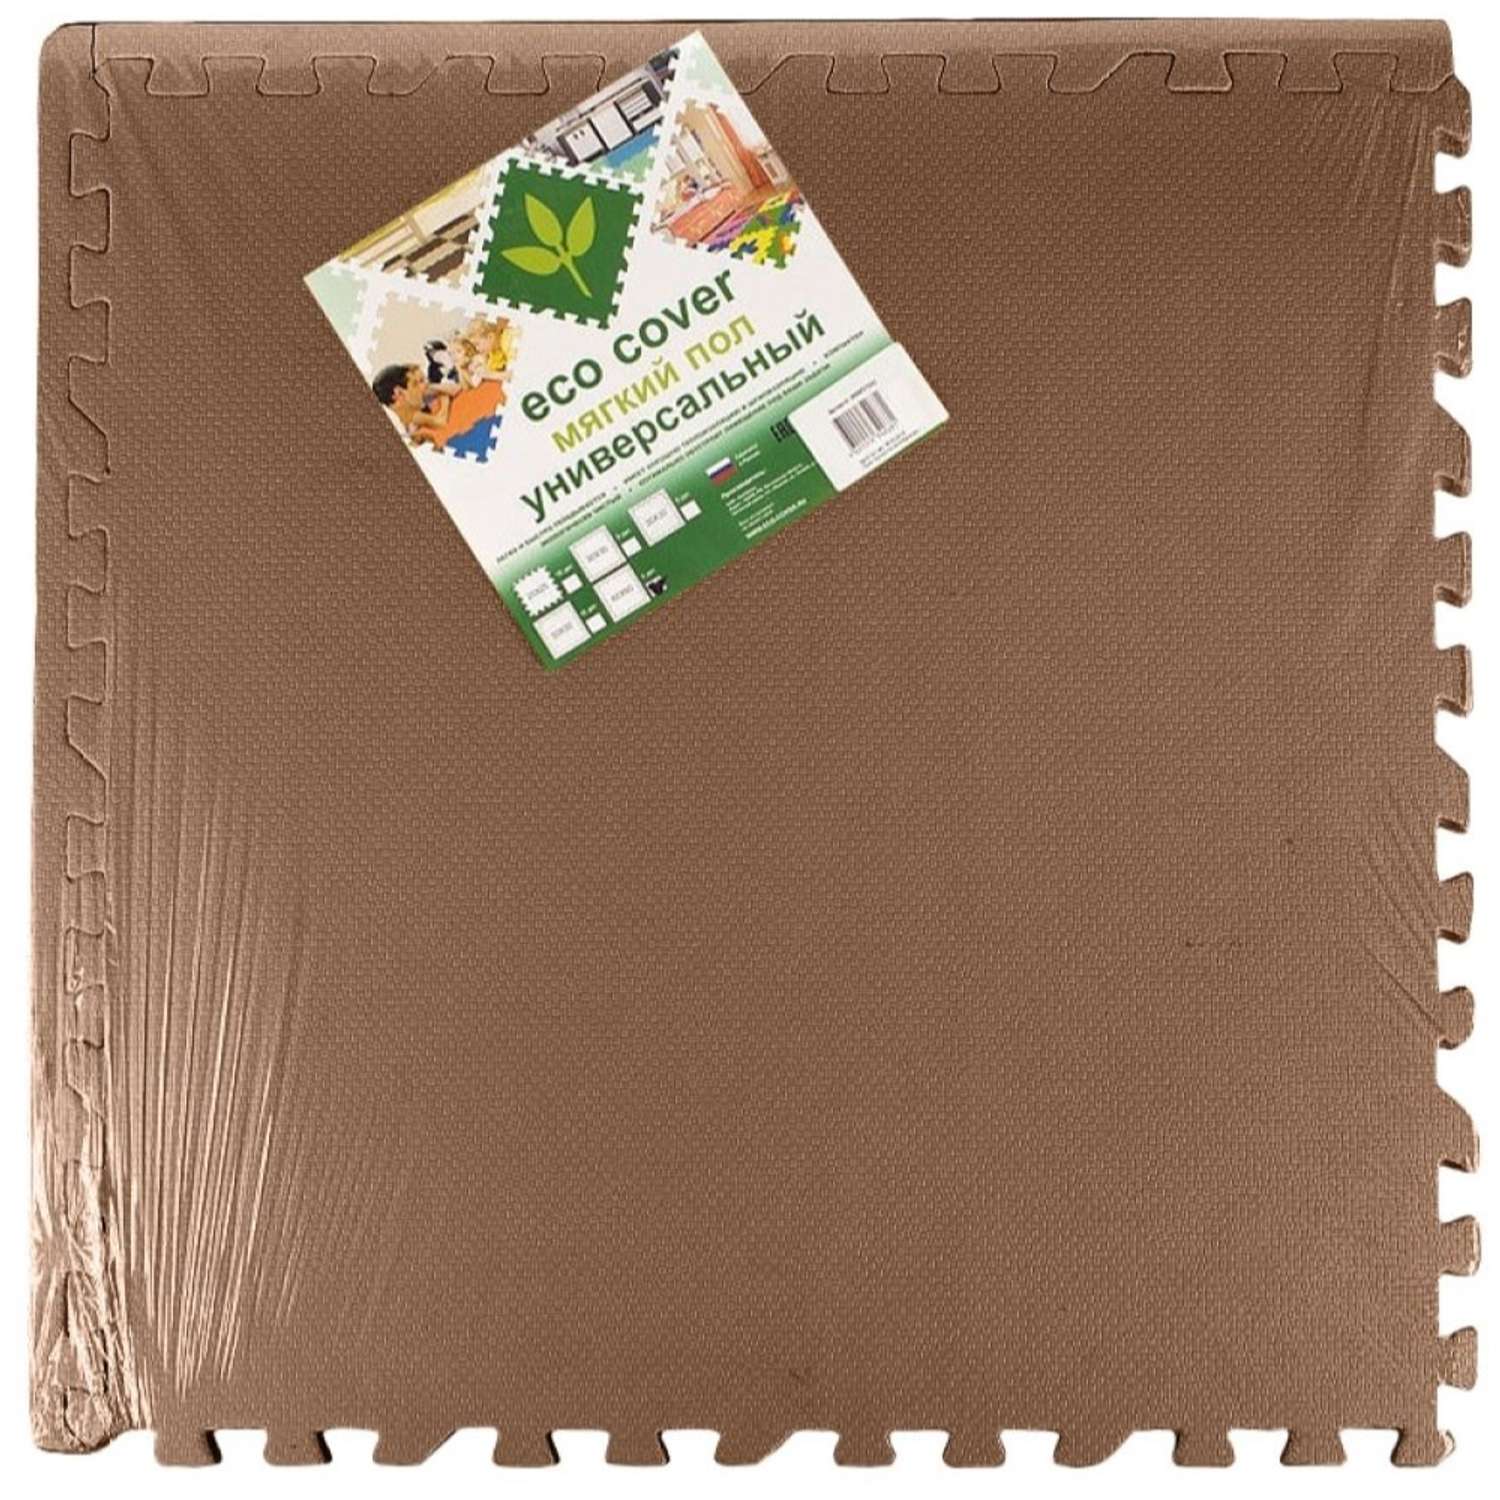 Развивающий детский коврик Eco cover игровой для ползания мягкий пол коричневый 60х60 - фото 1